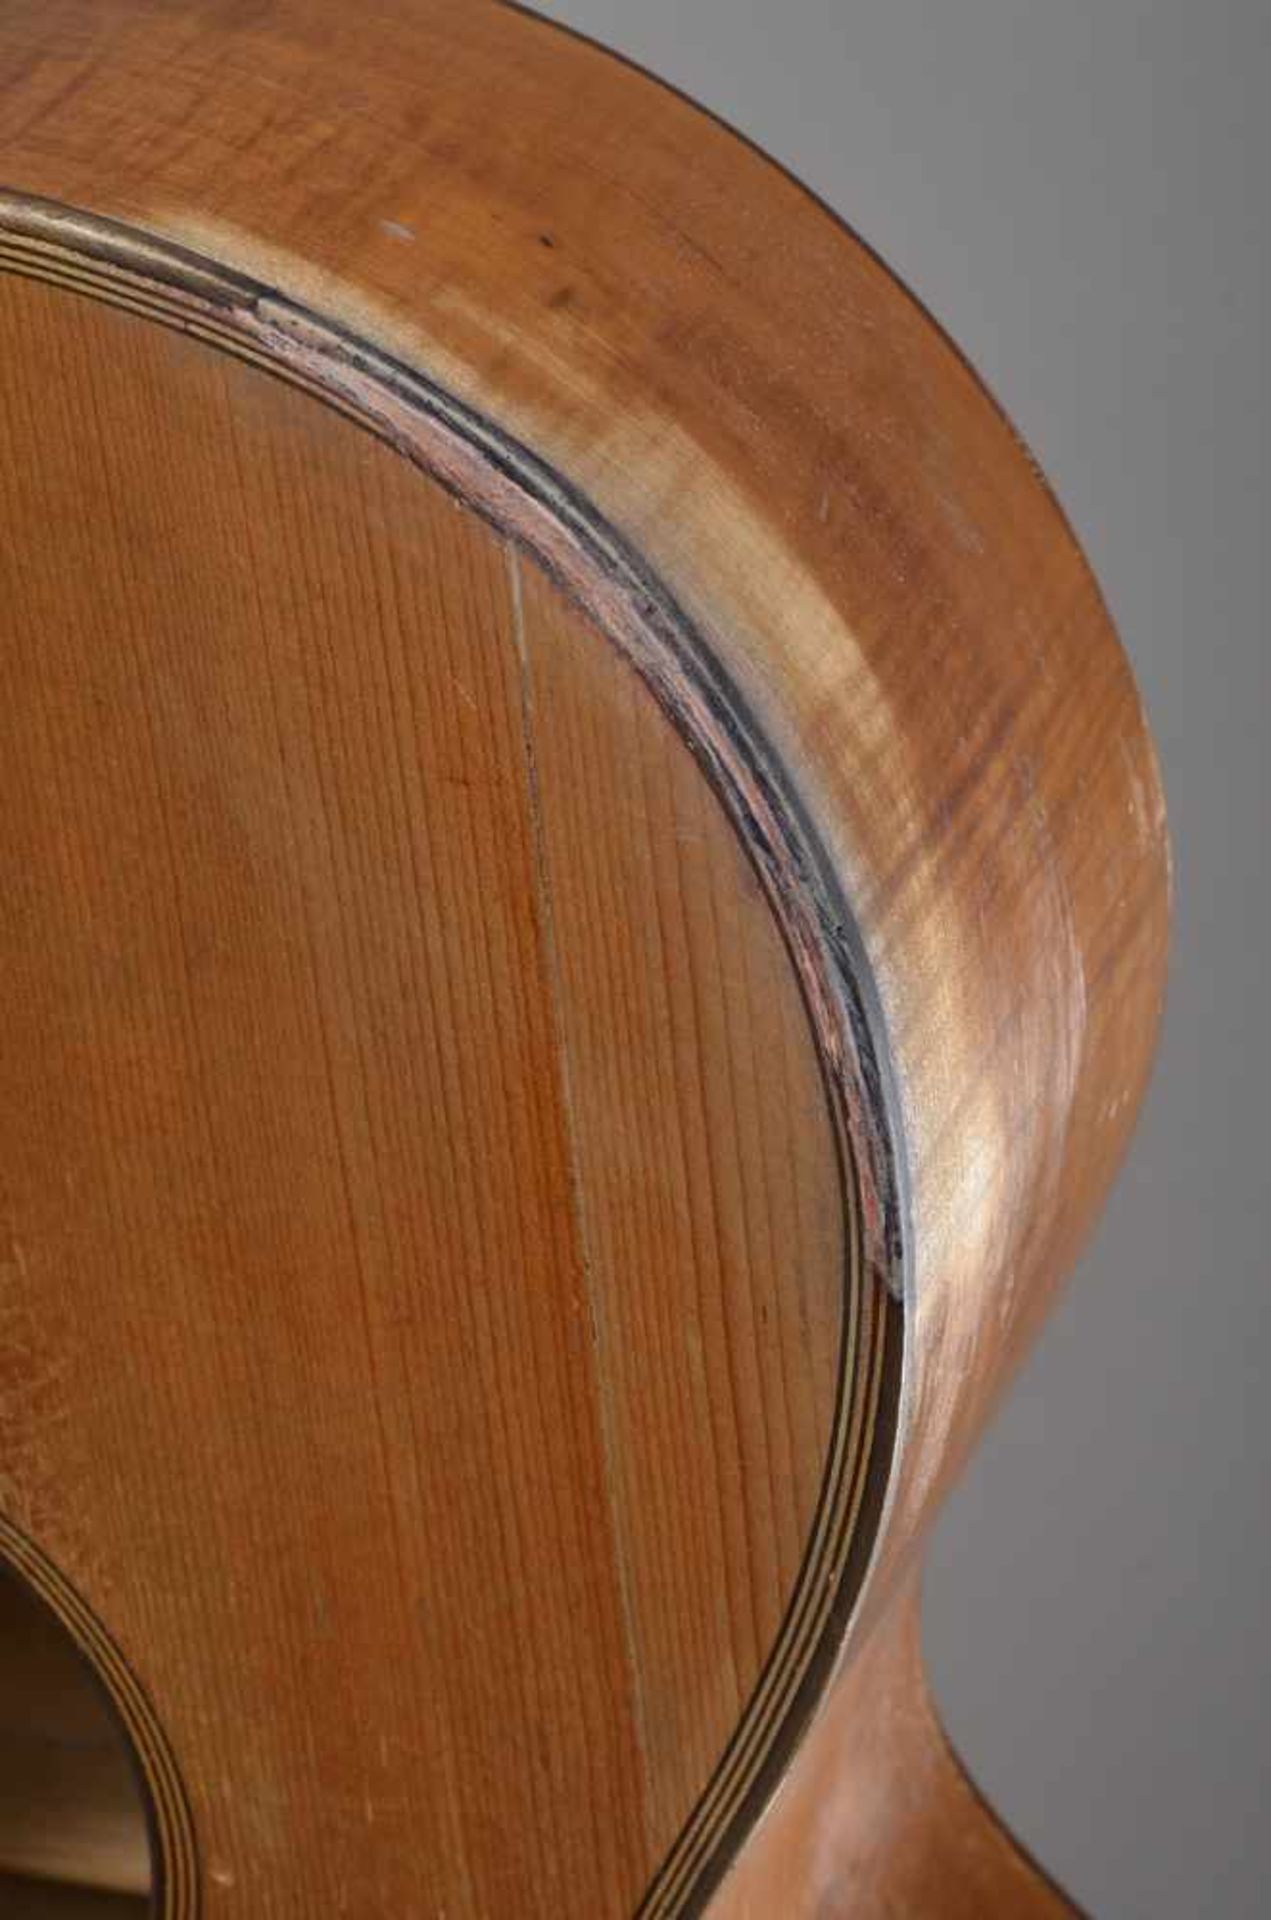 Historische Gitarre, Mensur 62cm, Gesamtlänge 93cm, Saitenhöhe 4-5mm, ca. 100 Jahre, spielbar - Image 7 of 8